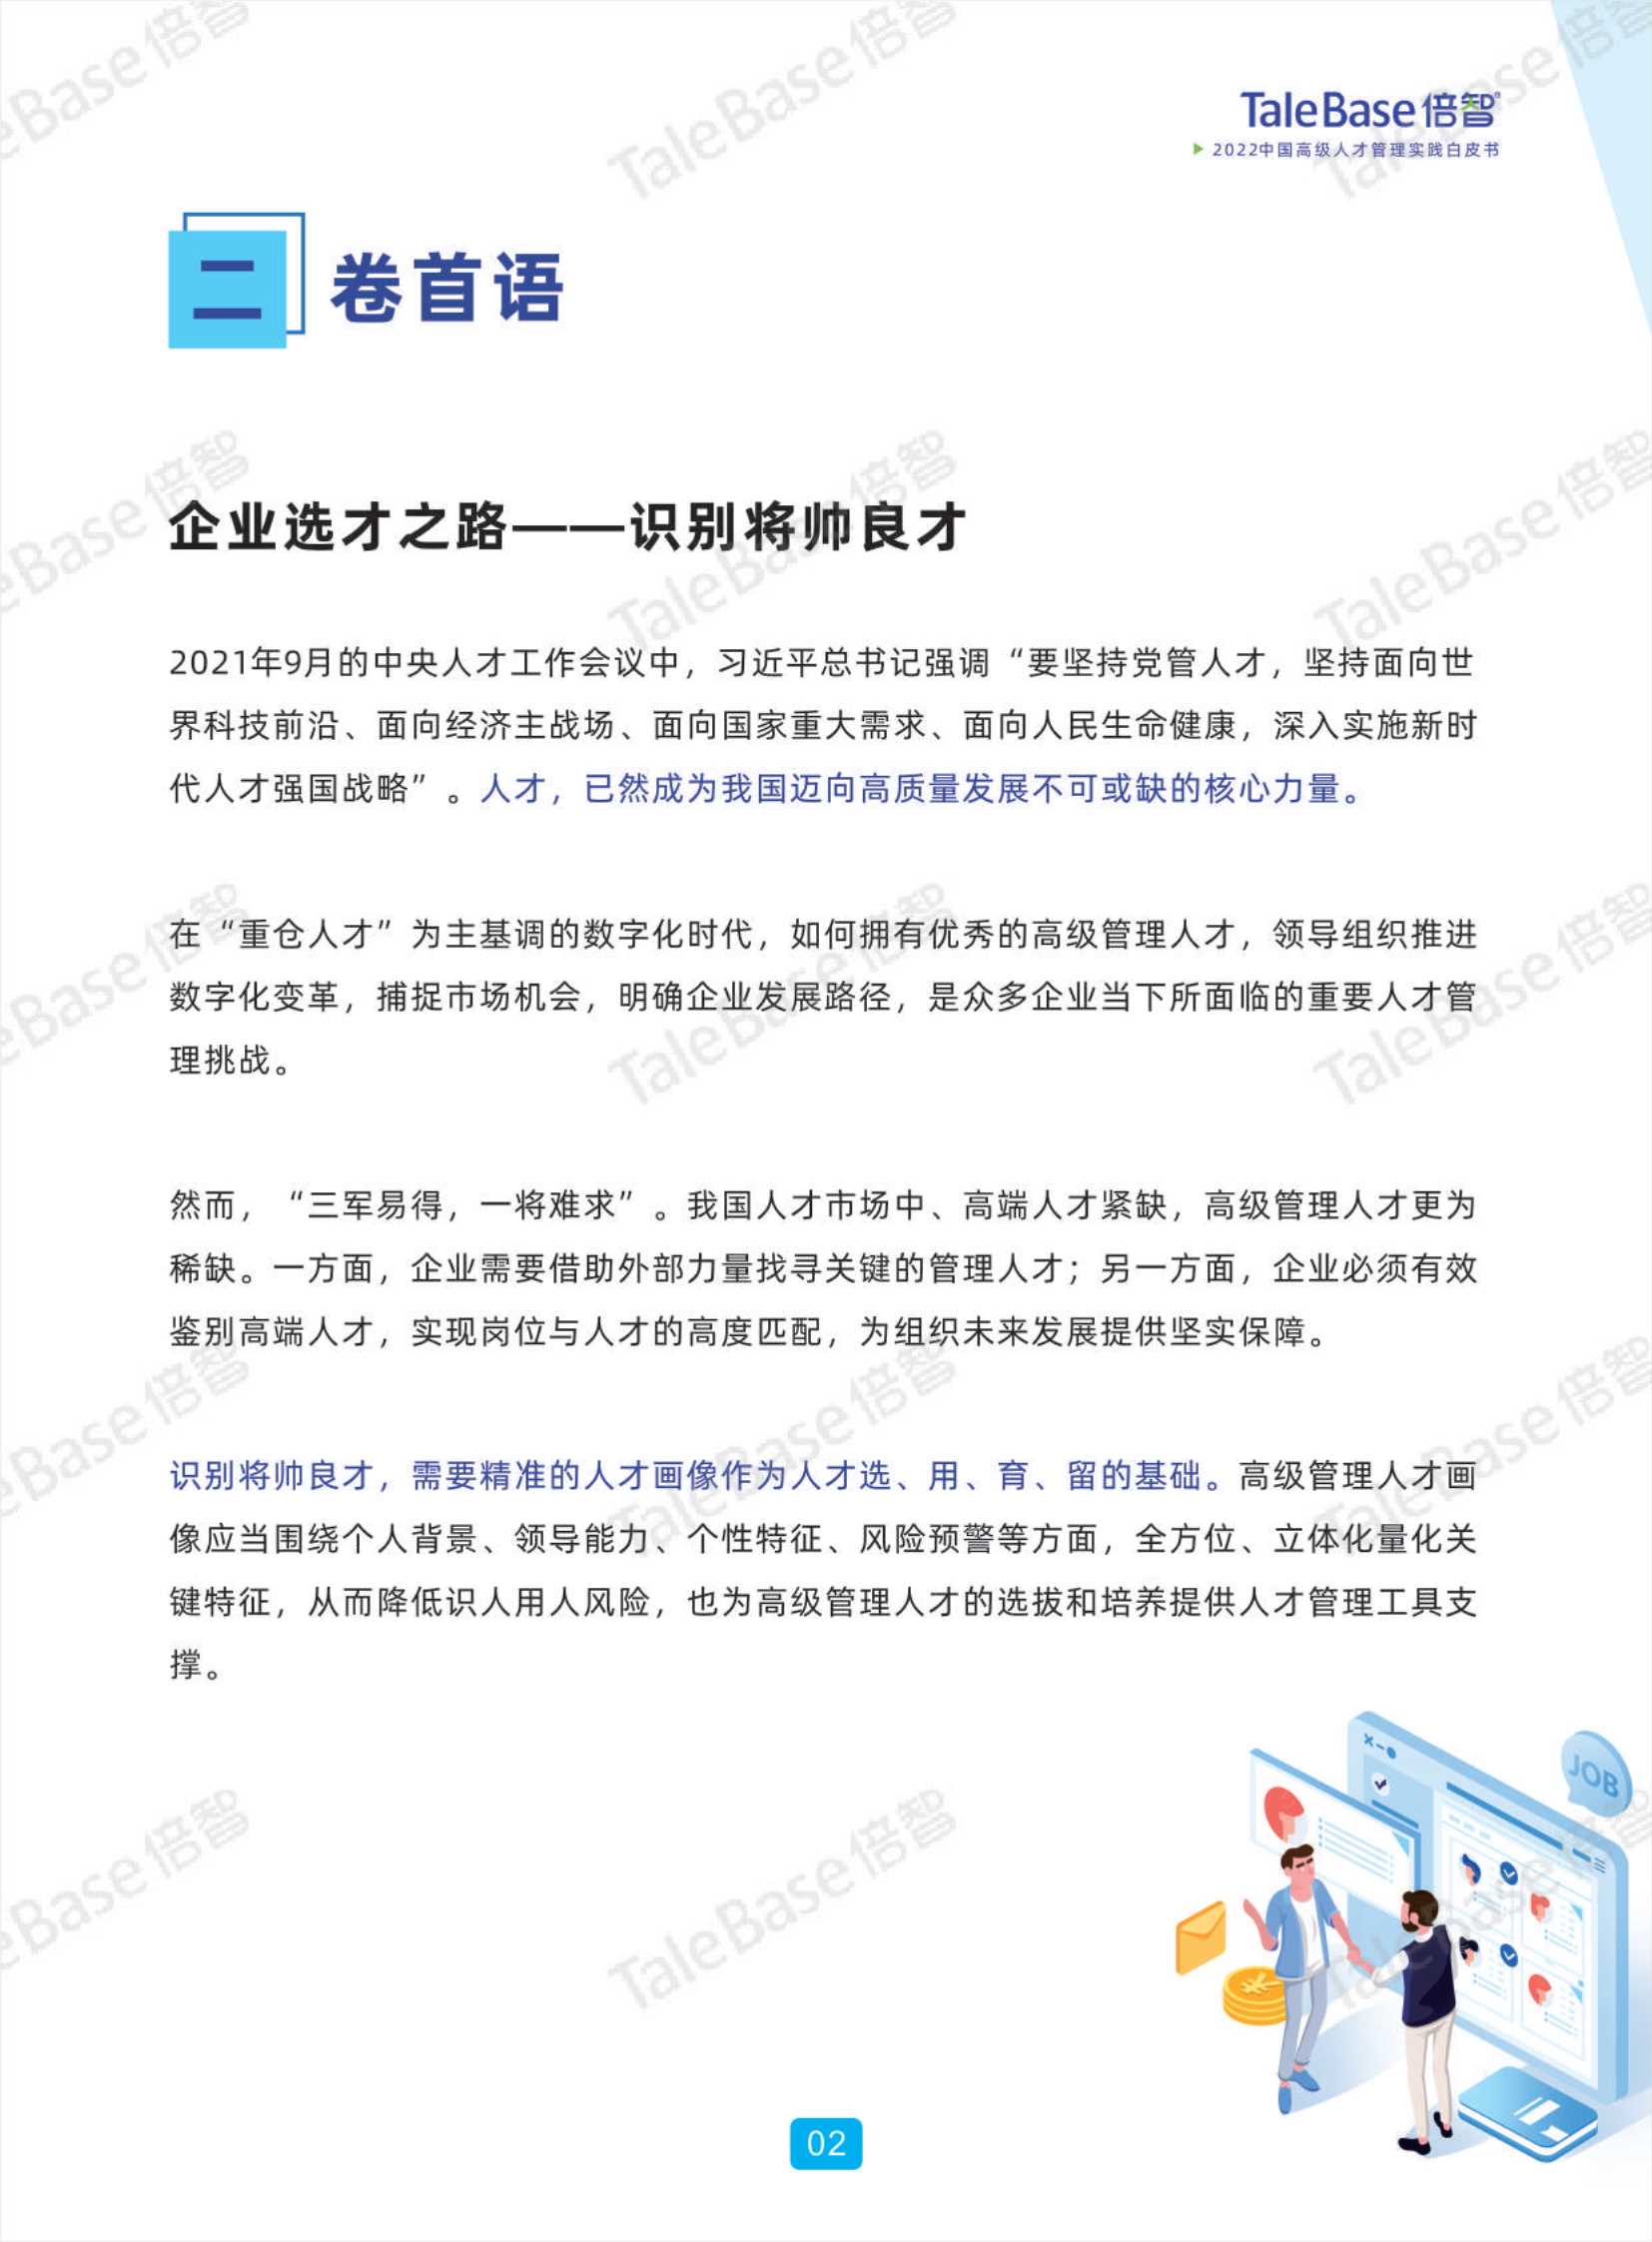 2022中国高级人才管理实践白皮书-2022.04-49页